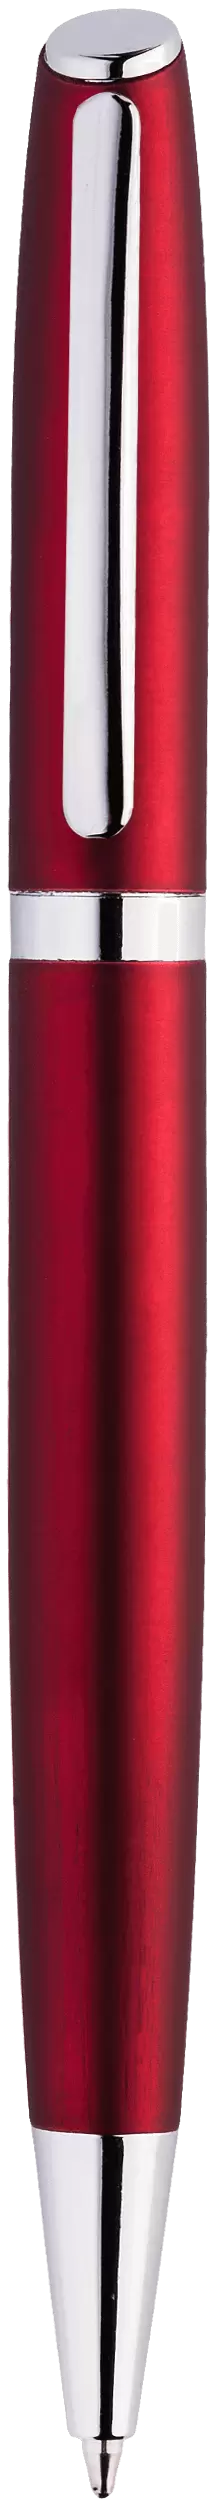 Ручка VESTA SOFT Красная 1121-03